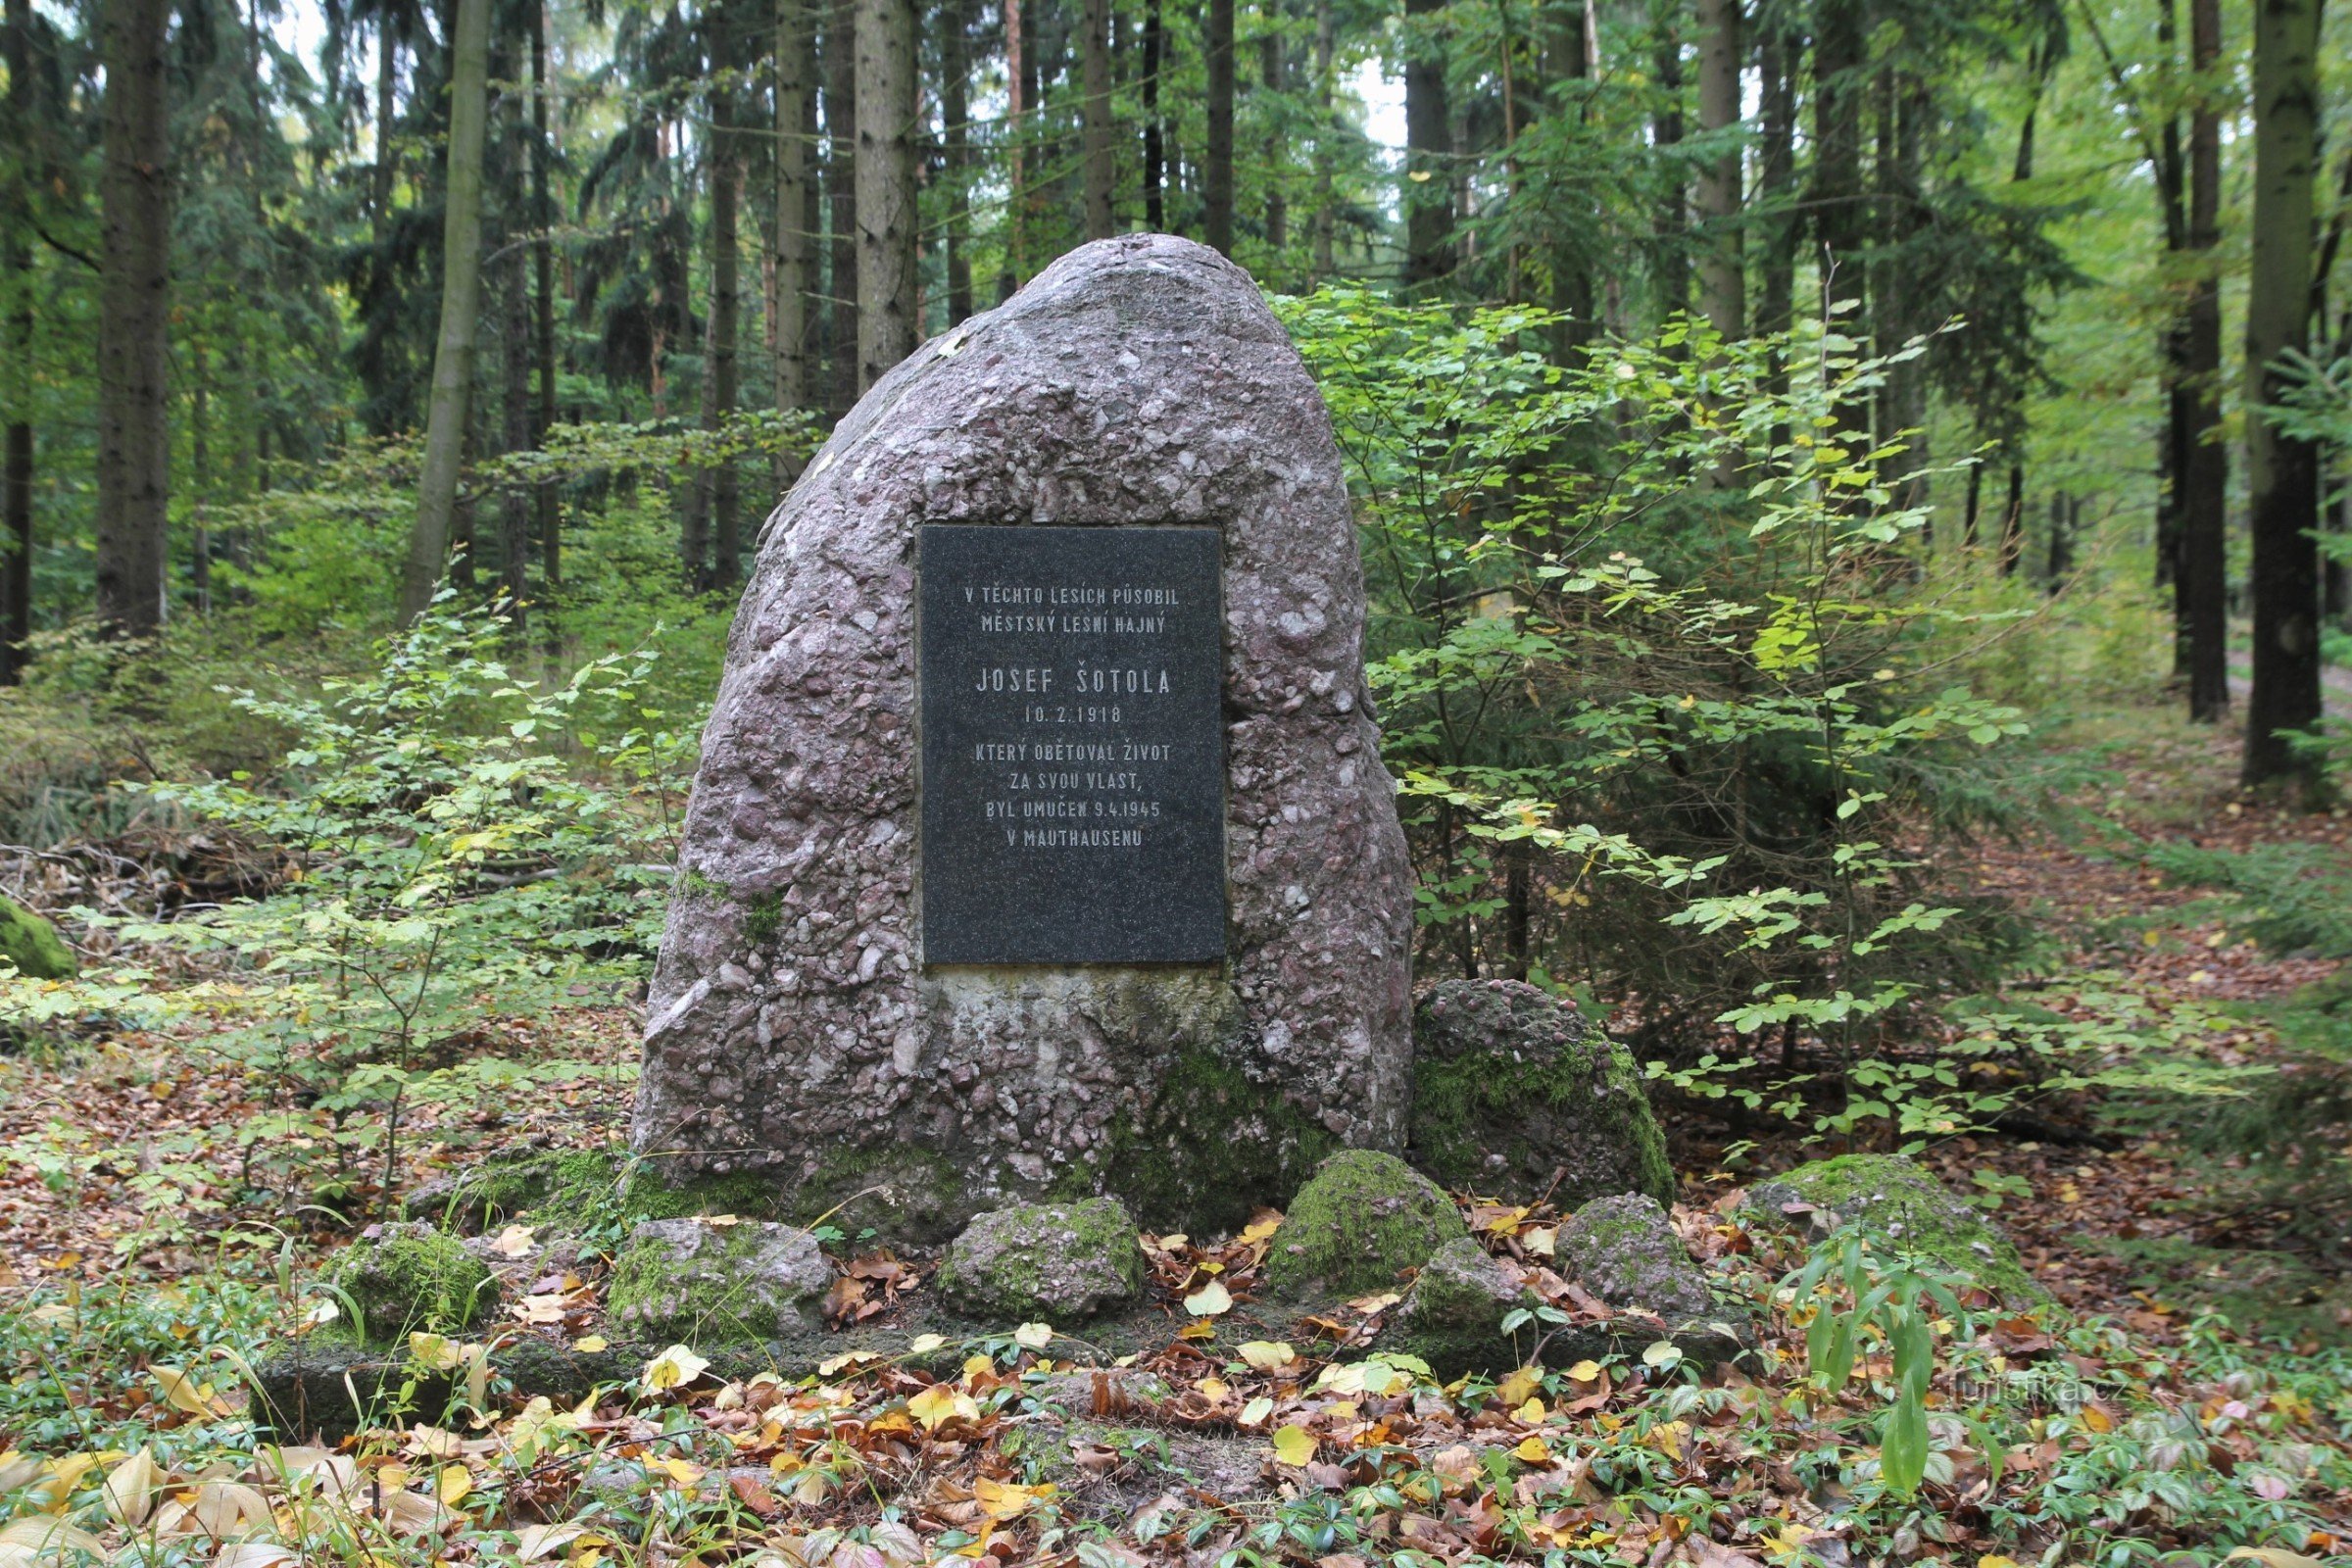 Le mémorial de Josef Šotola est situé sur une petite clairière